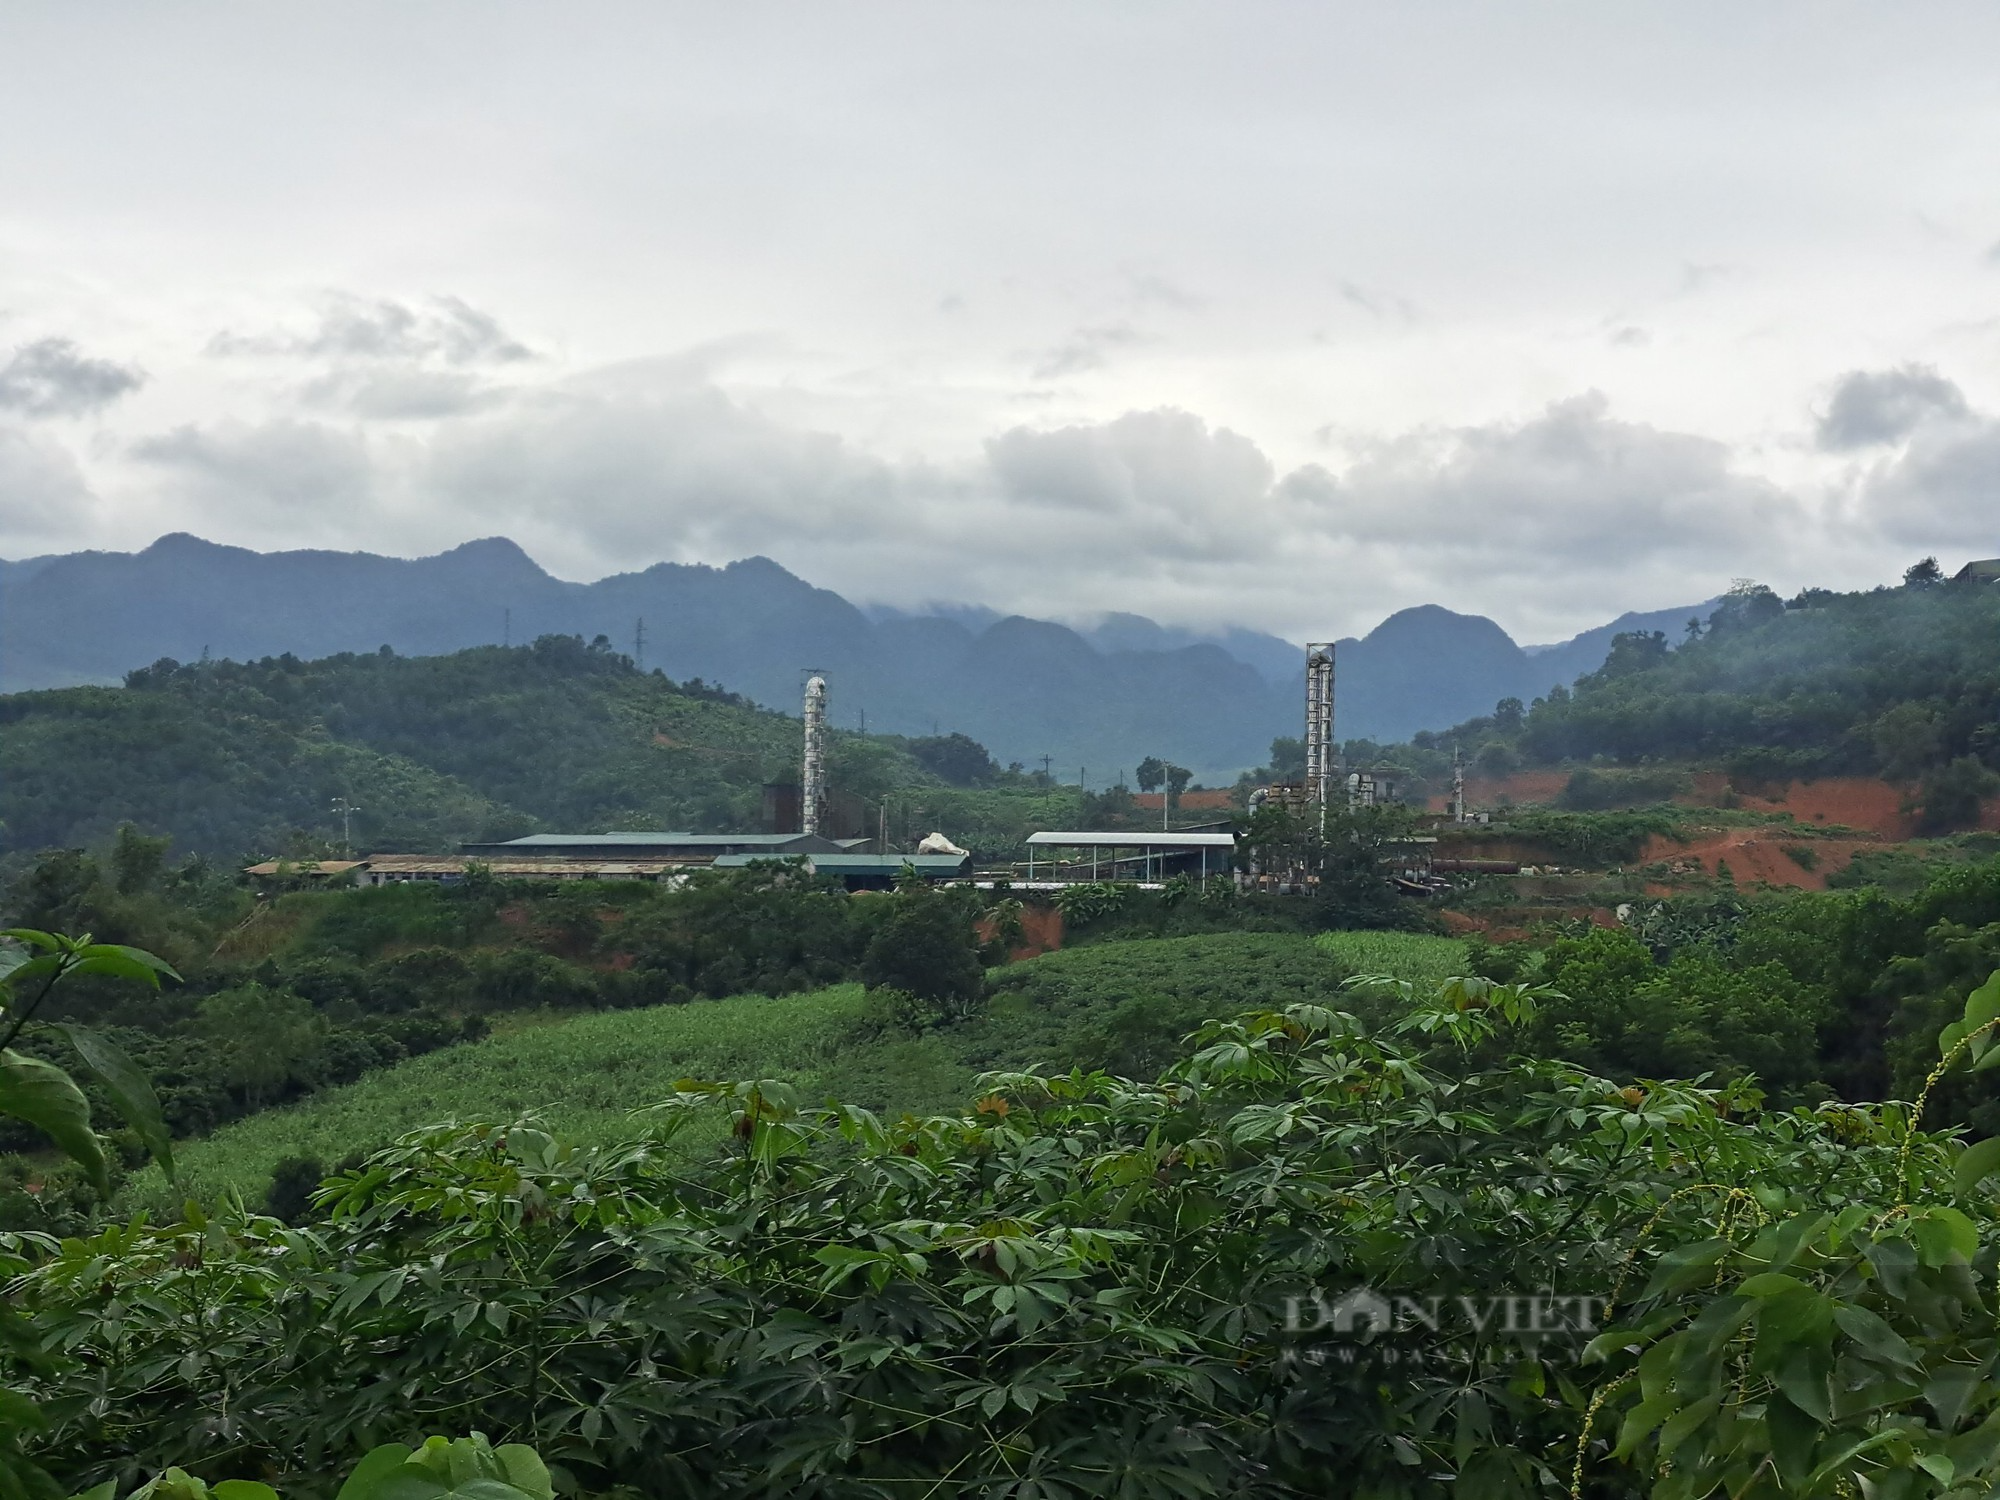 Quy hoạch treo cụm công nghiệp Phong Phú: Bồi thường hơn 13 tỷ đồng…, chuyển 1 tỷ đồng để chi trả - Ảnh 1.